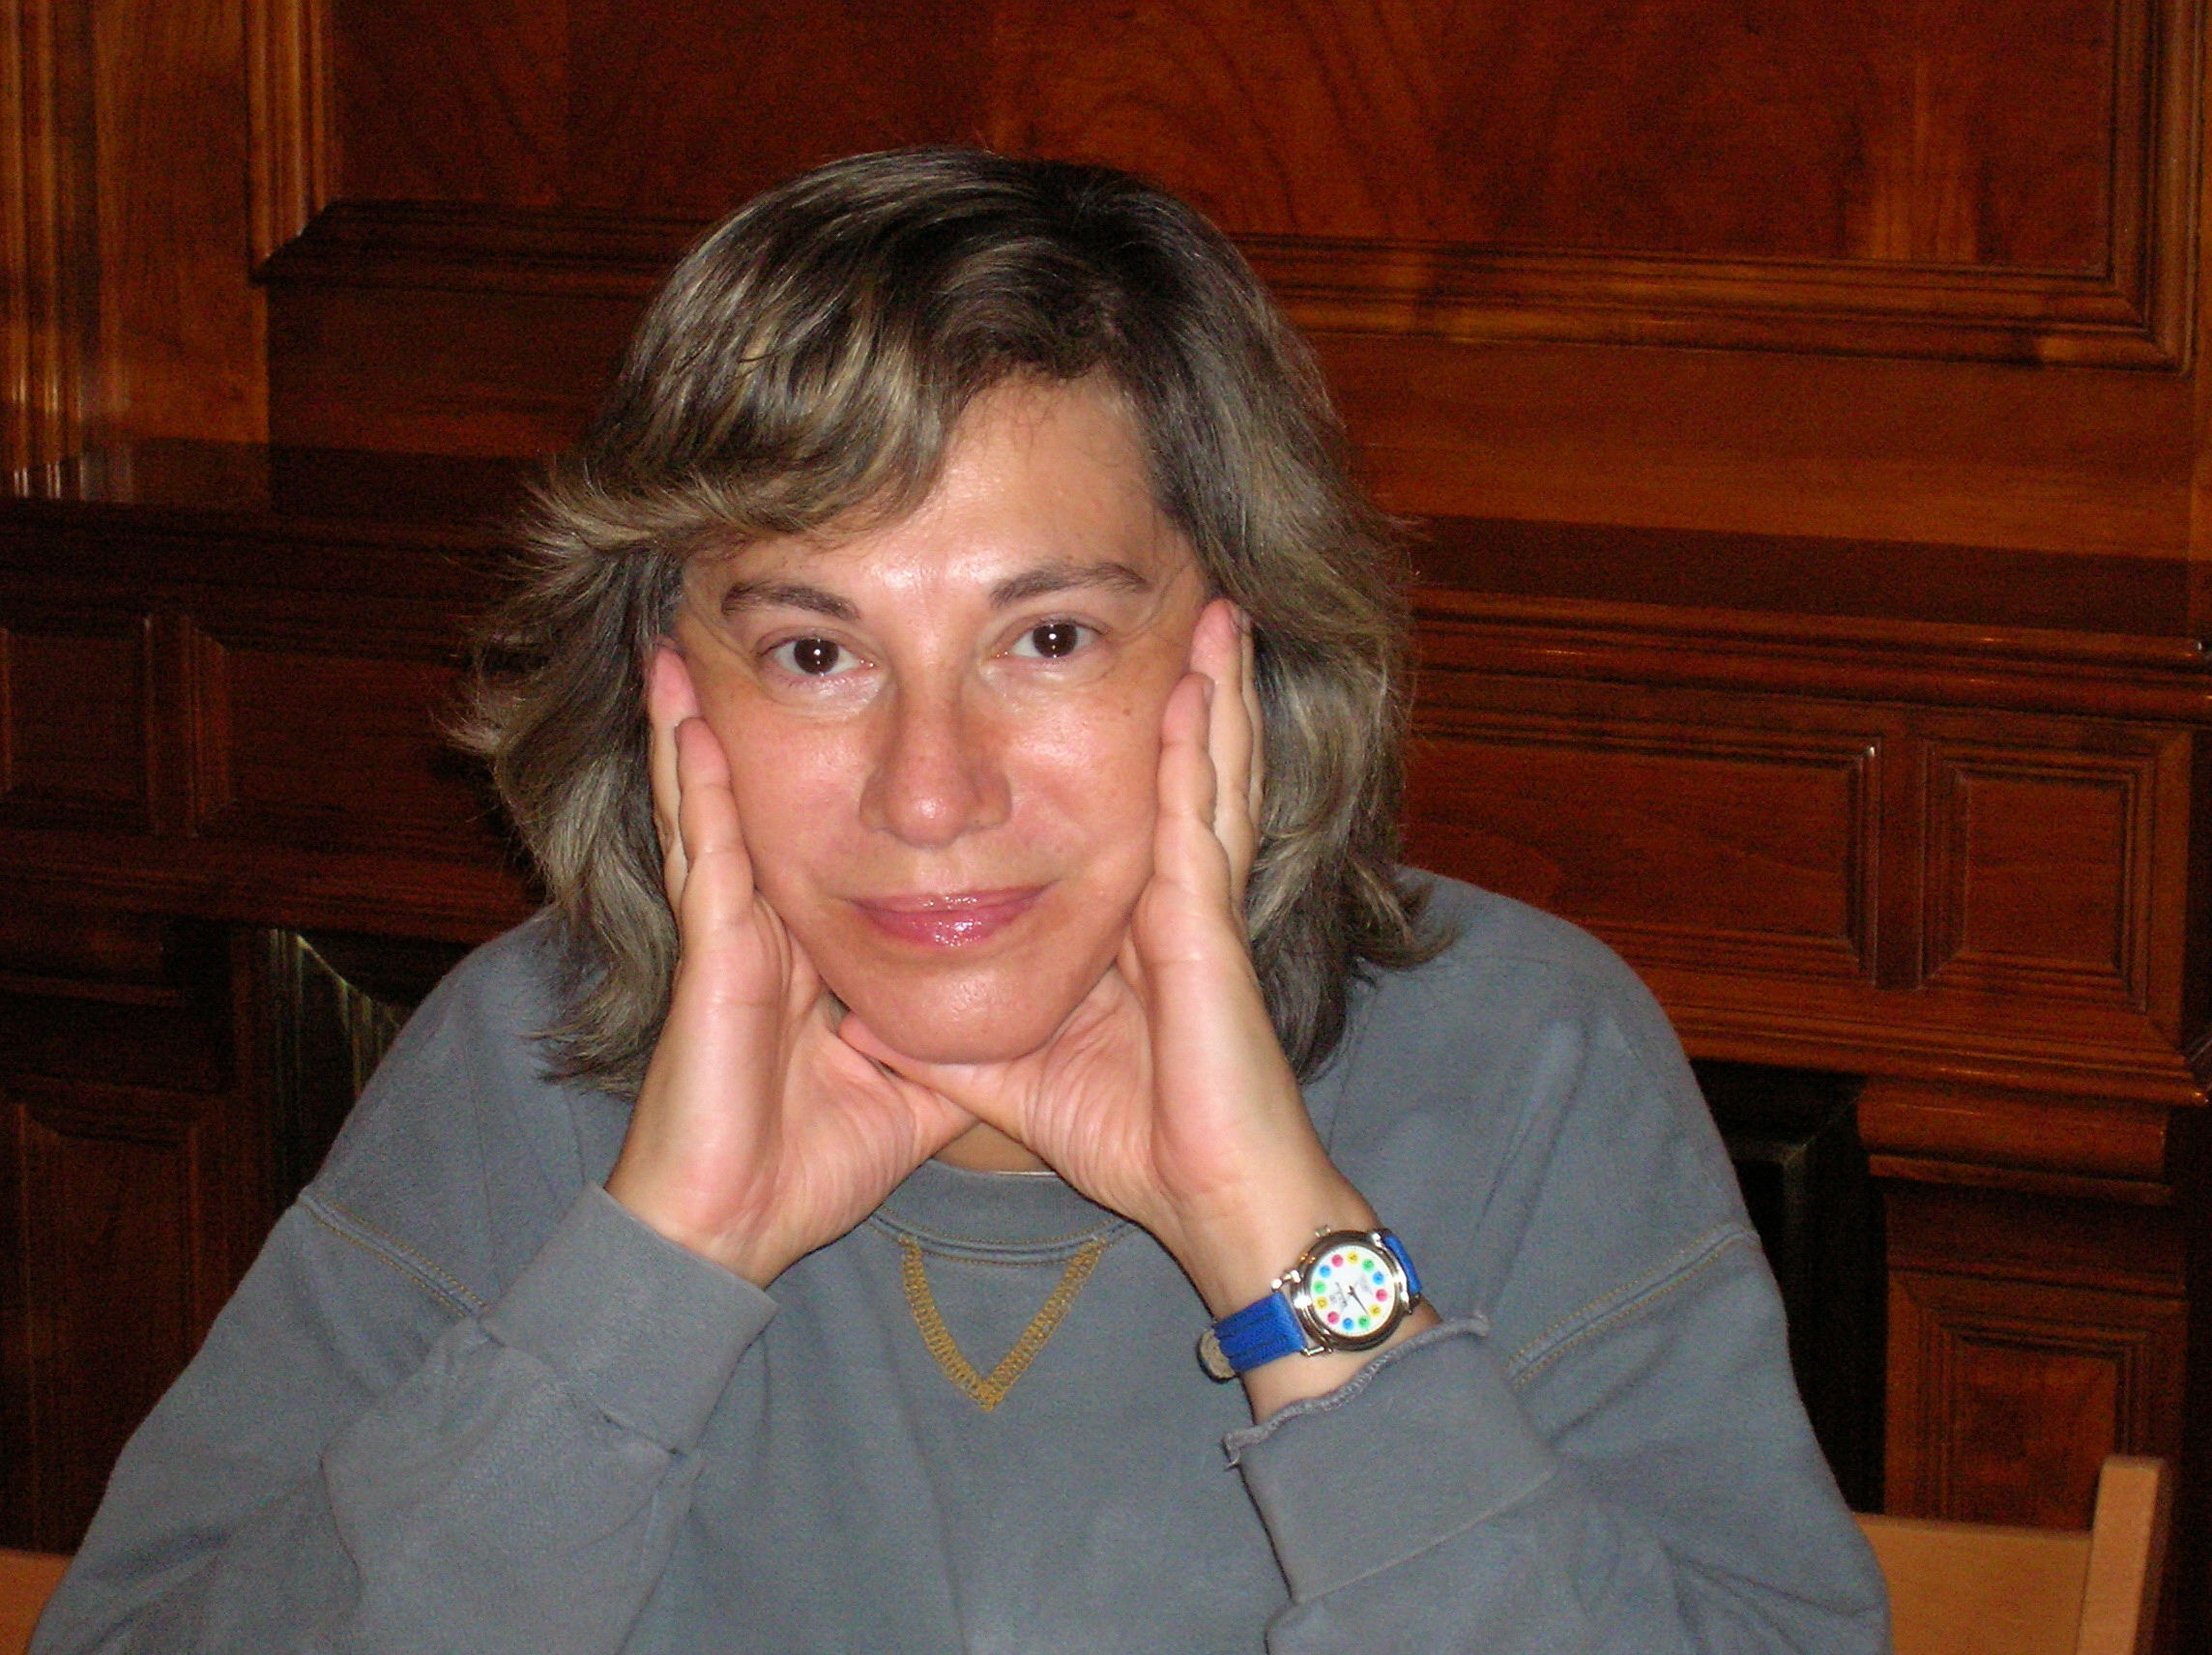  Reina Roffe in 2006